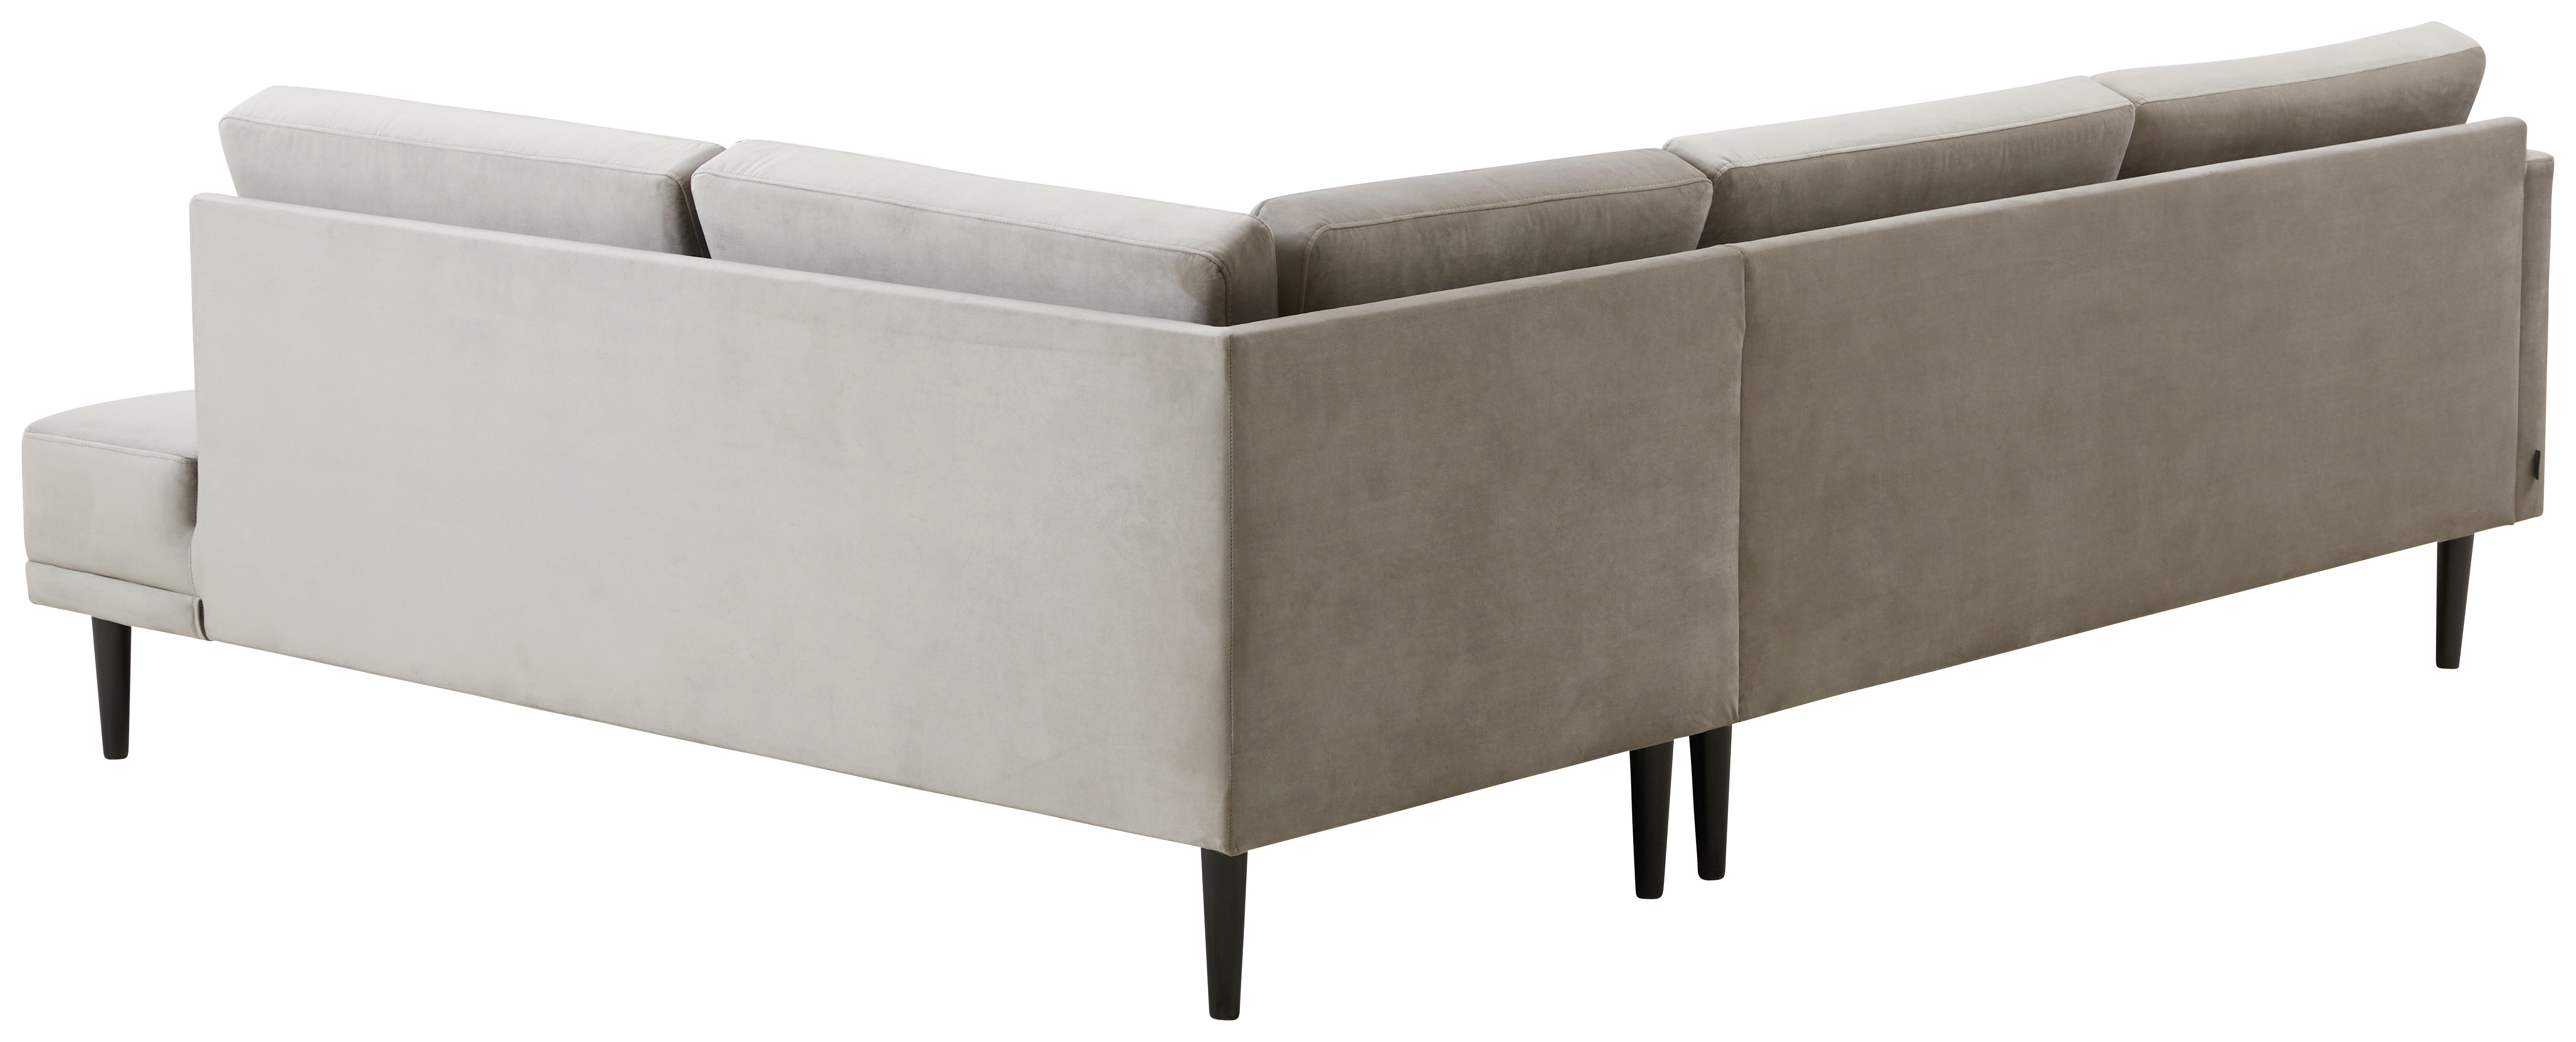 SOFFA i trä, textil beige  - beige/svart, Design, trä/textil (241/78/186cm) - Pure Home Comfort